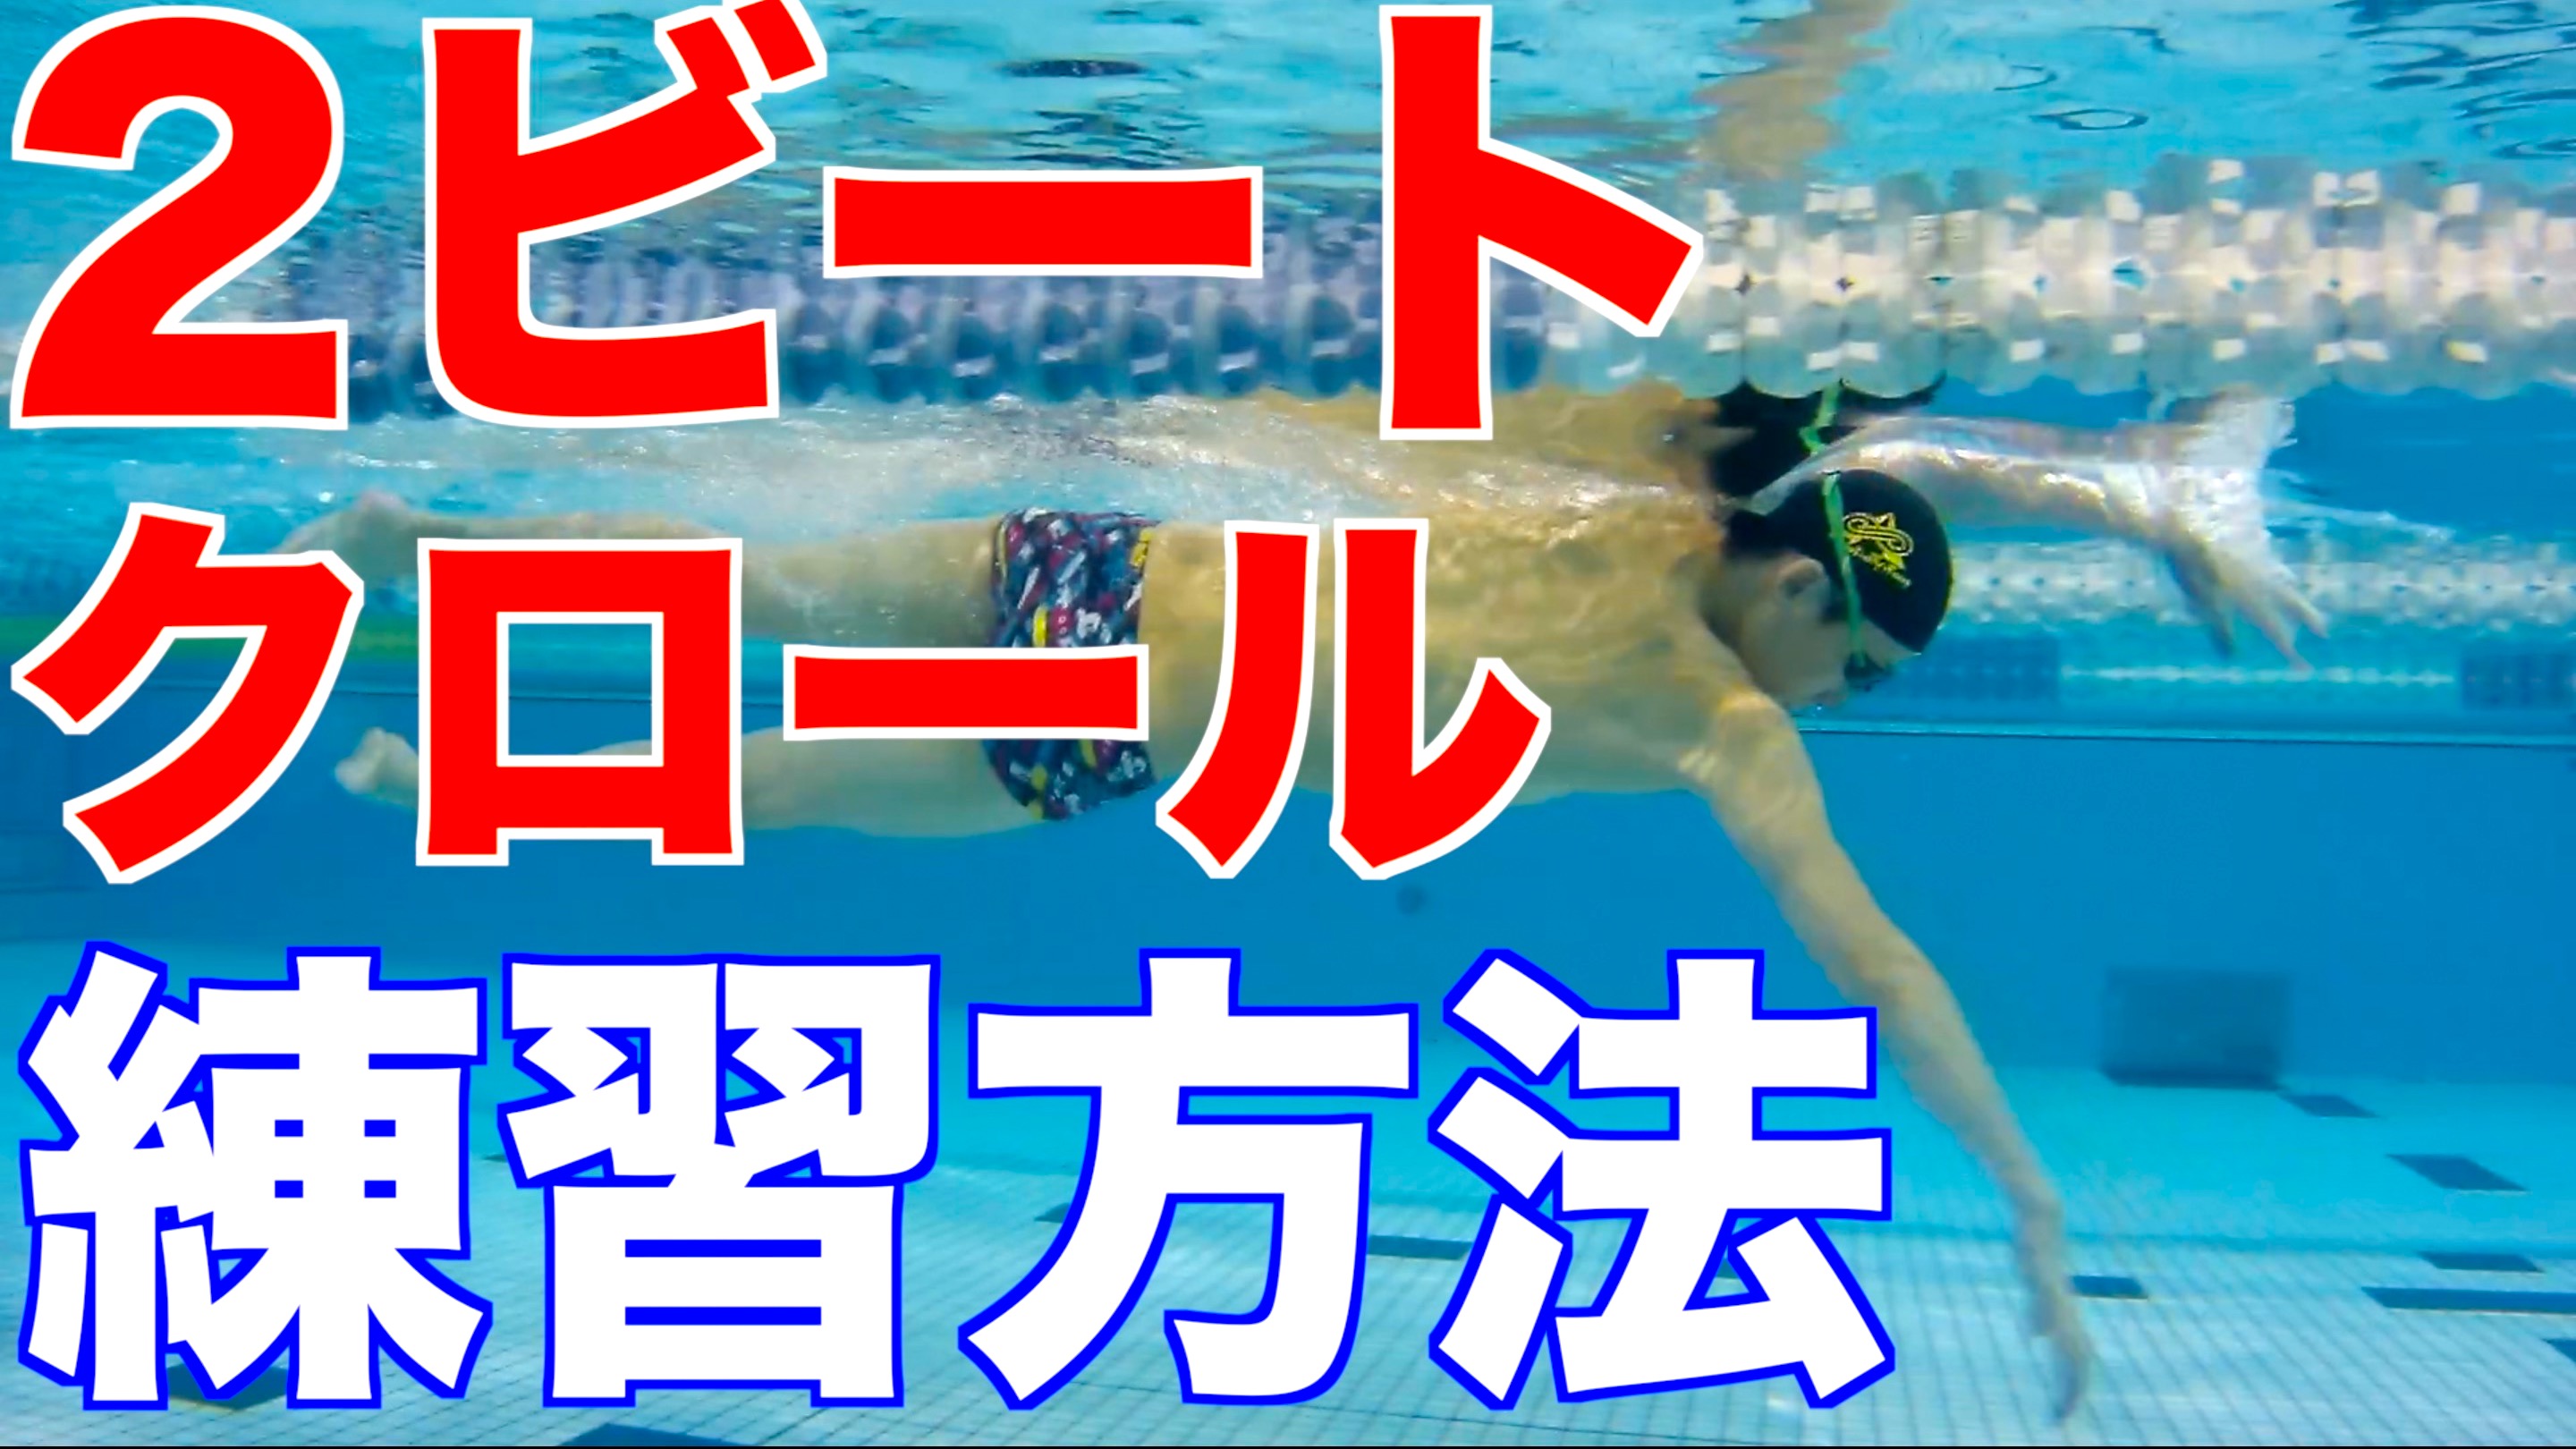 【プロ解説】クロール (2ビート) の泳ぎ方と練習方法 2